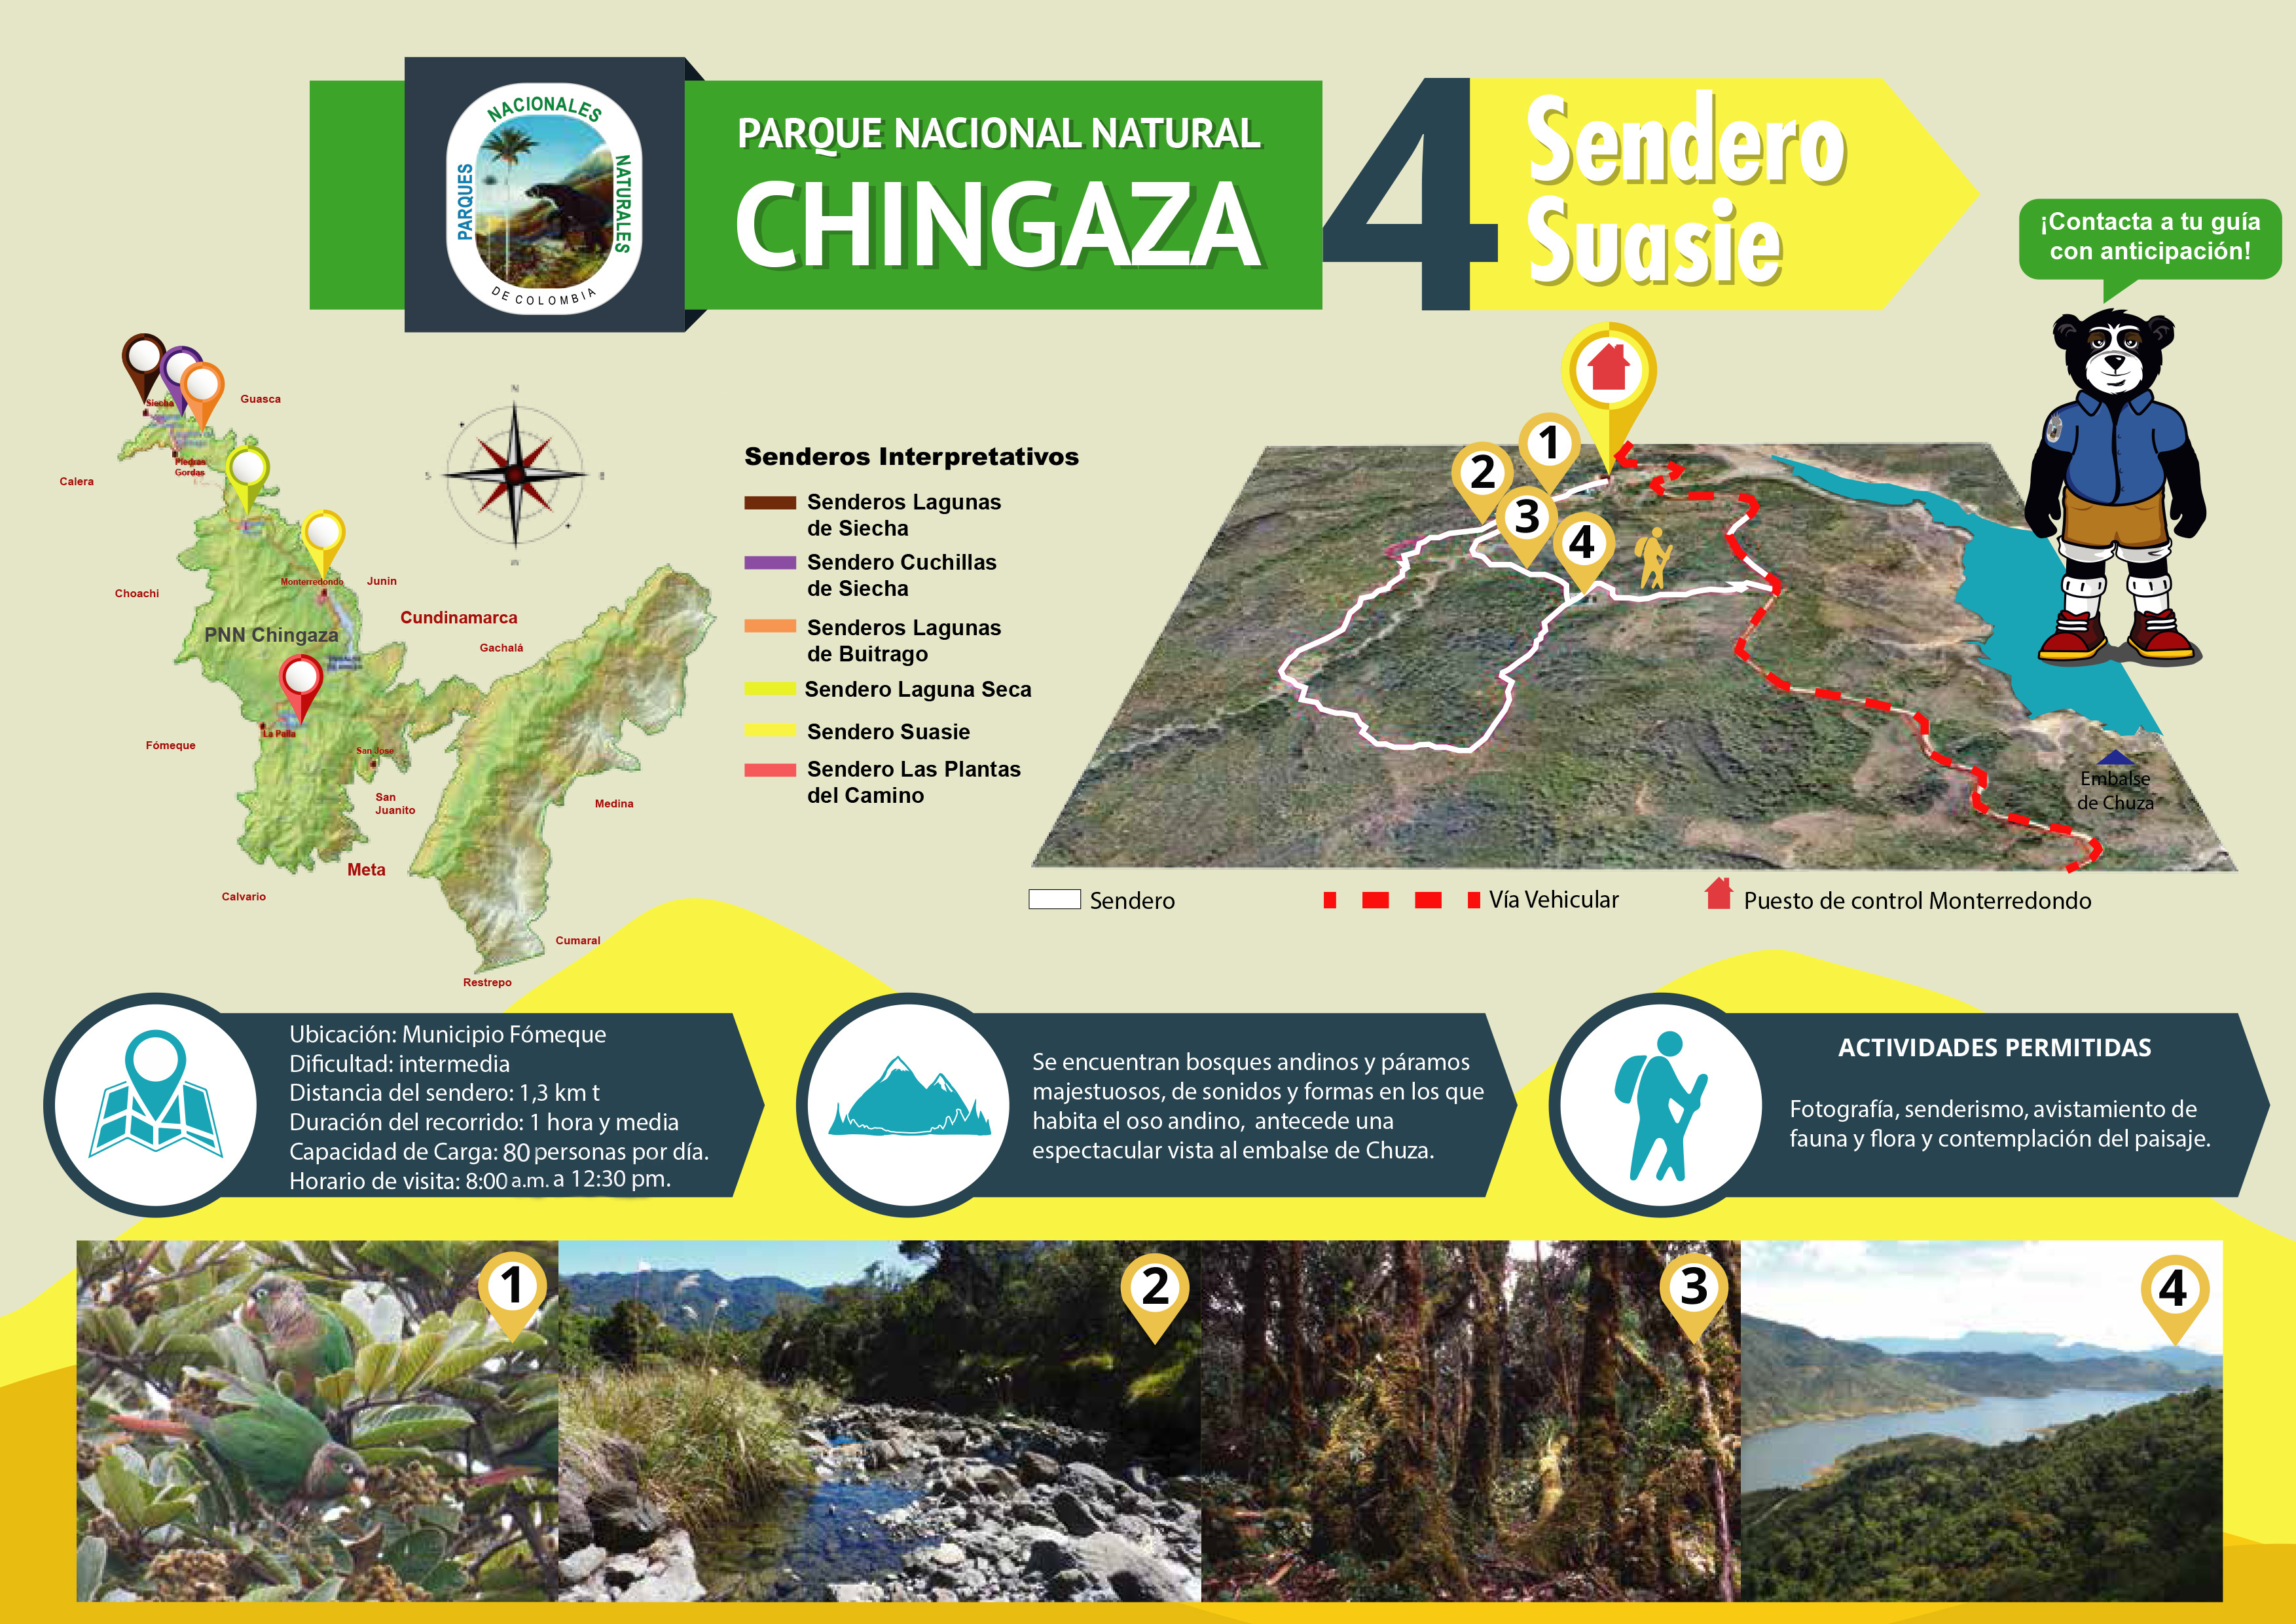 Trekking en Parque Nacional Chingaza, Páramo en Colombia - Foro América del Sur